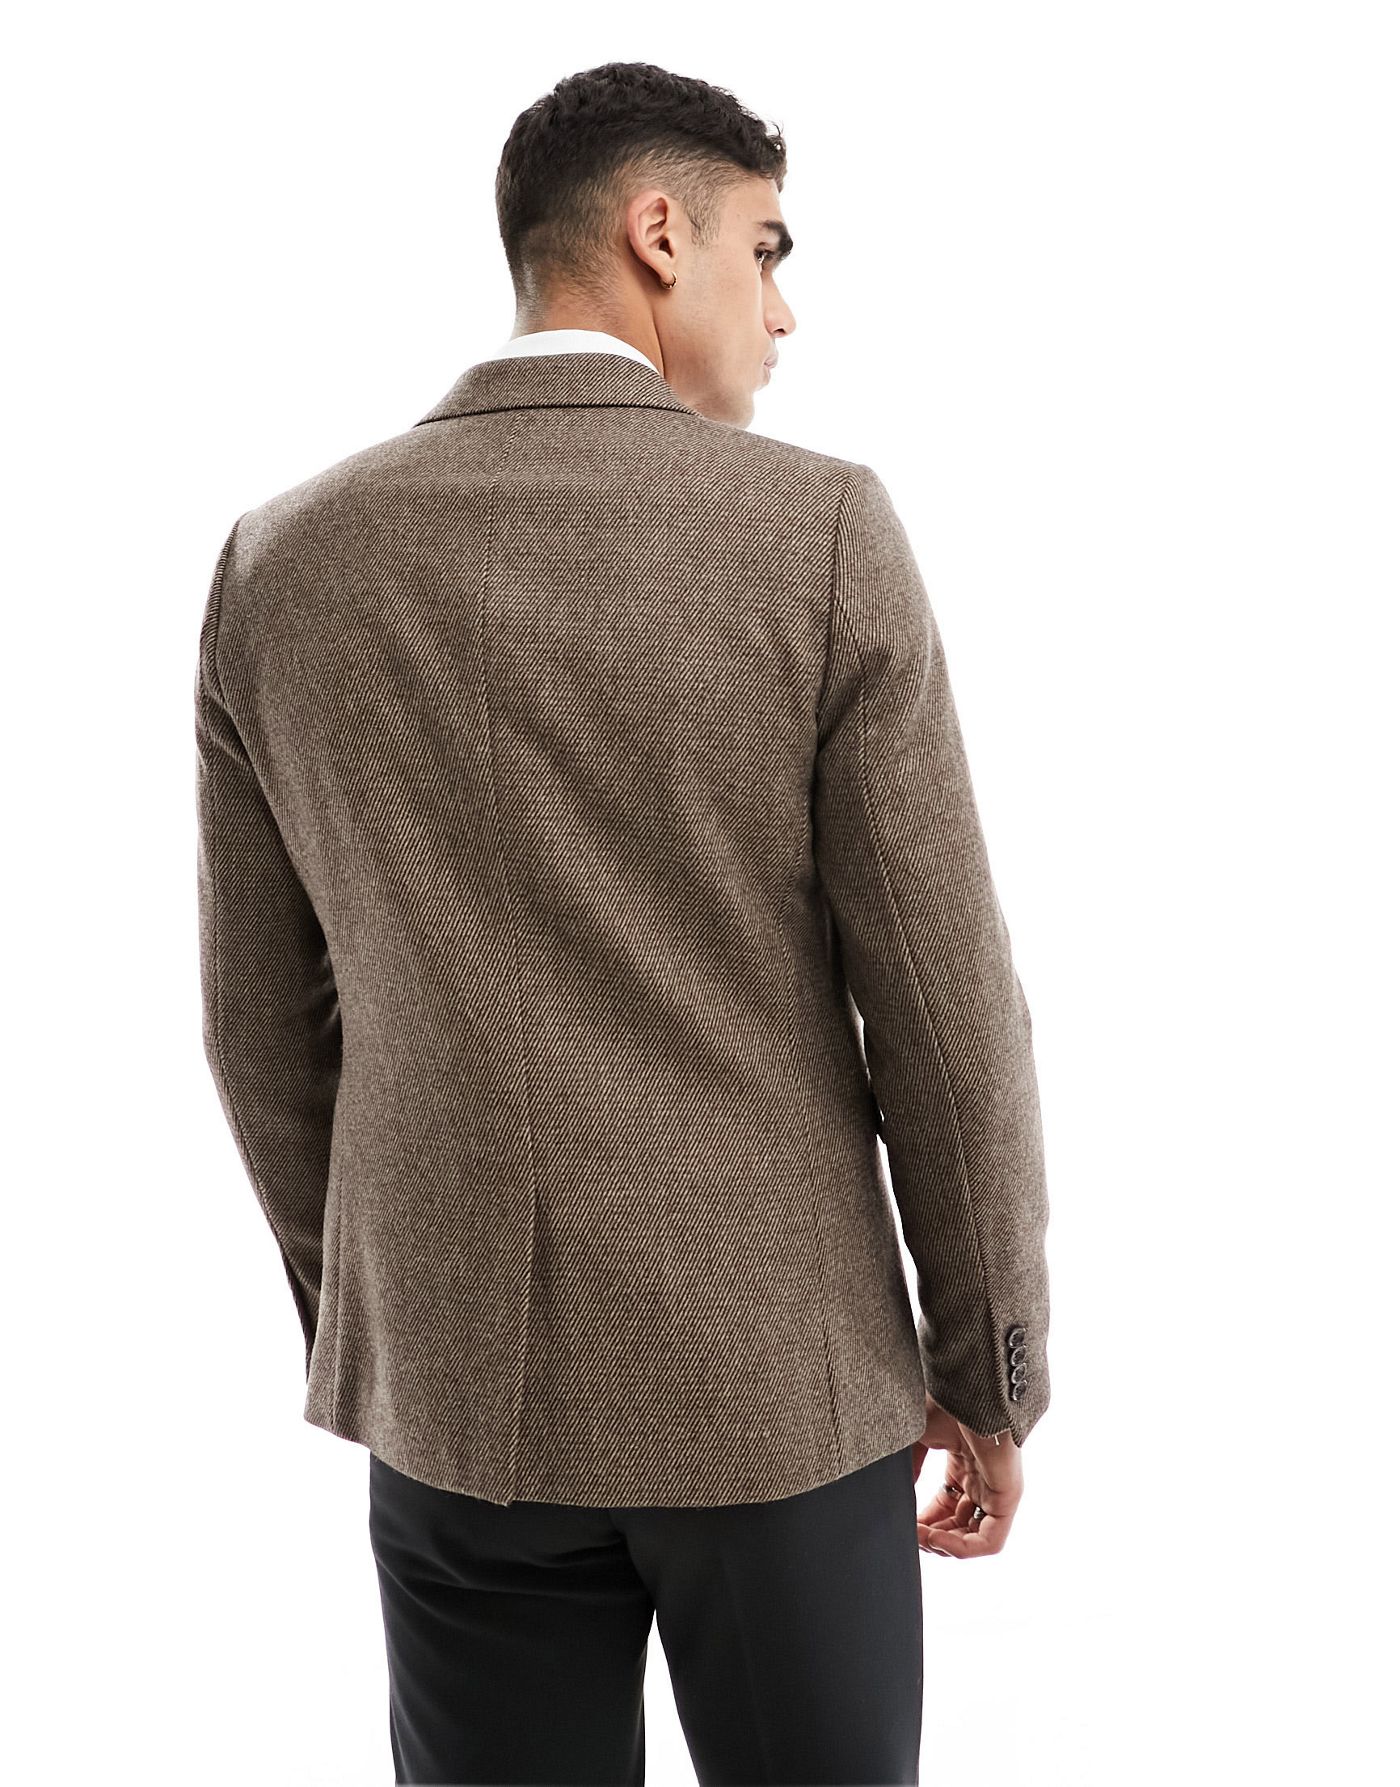 Gianni Feraud brown slim tweed suit jacket